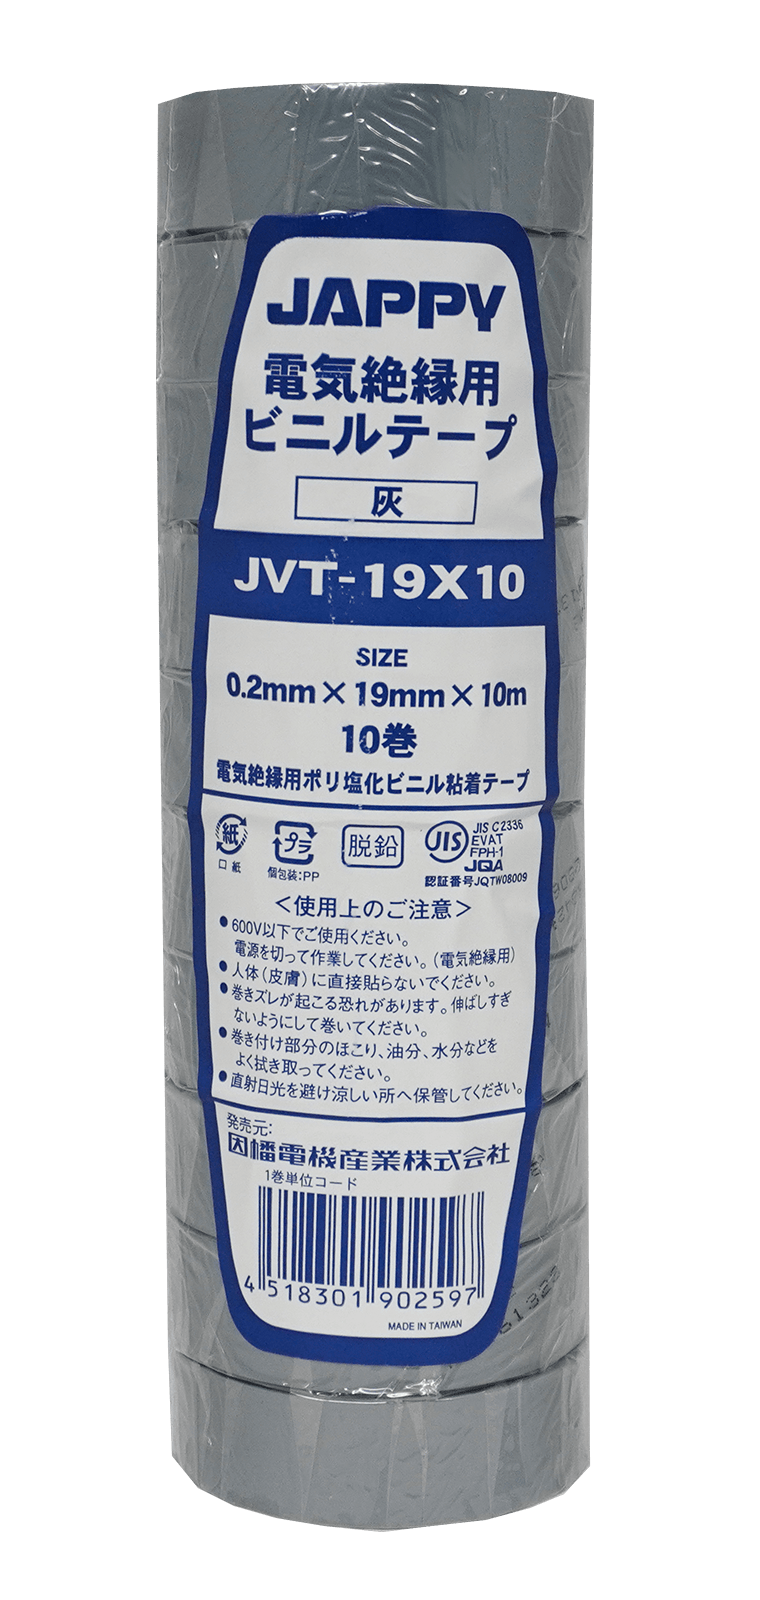 【JAPPY】 ビニルテープ  JVT-19X10-(GRY)